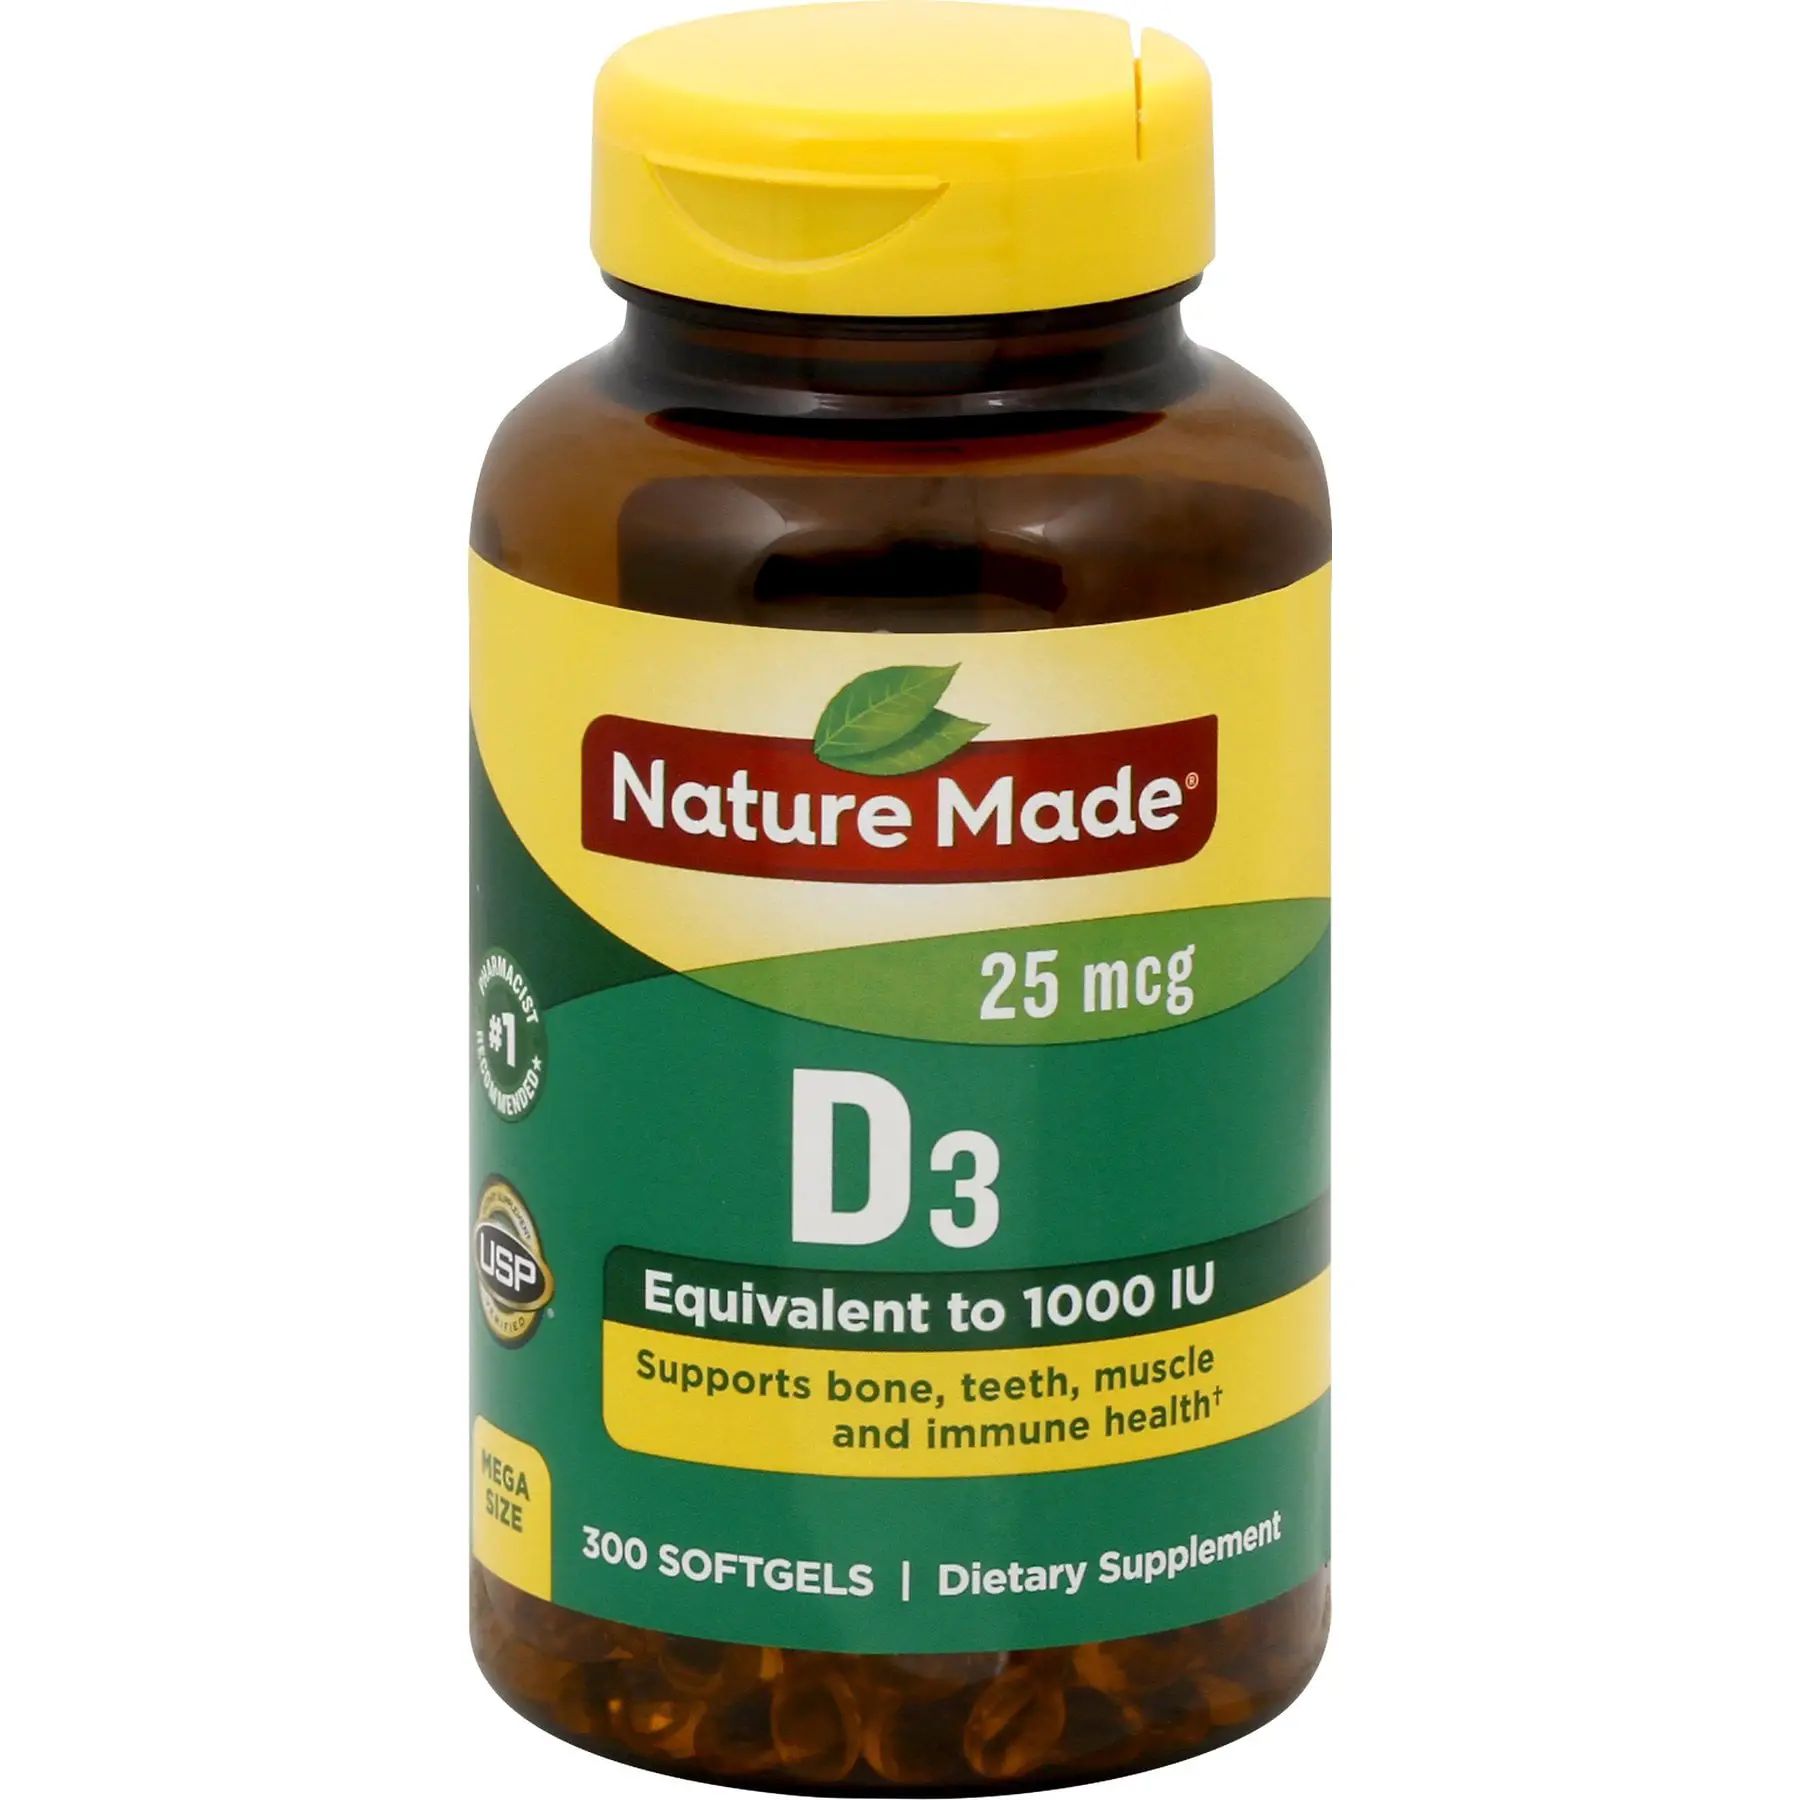 NATURE MADE Vitamin D3, 25 mcg, Softgels, Mega Size, 300.0 CT